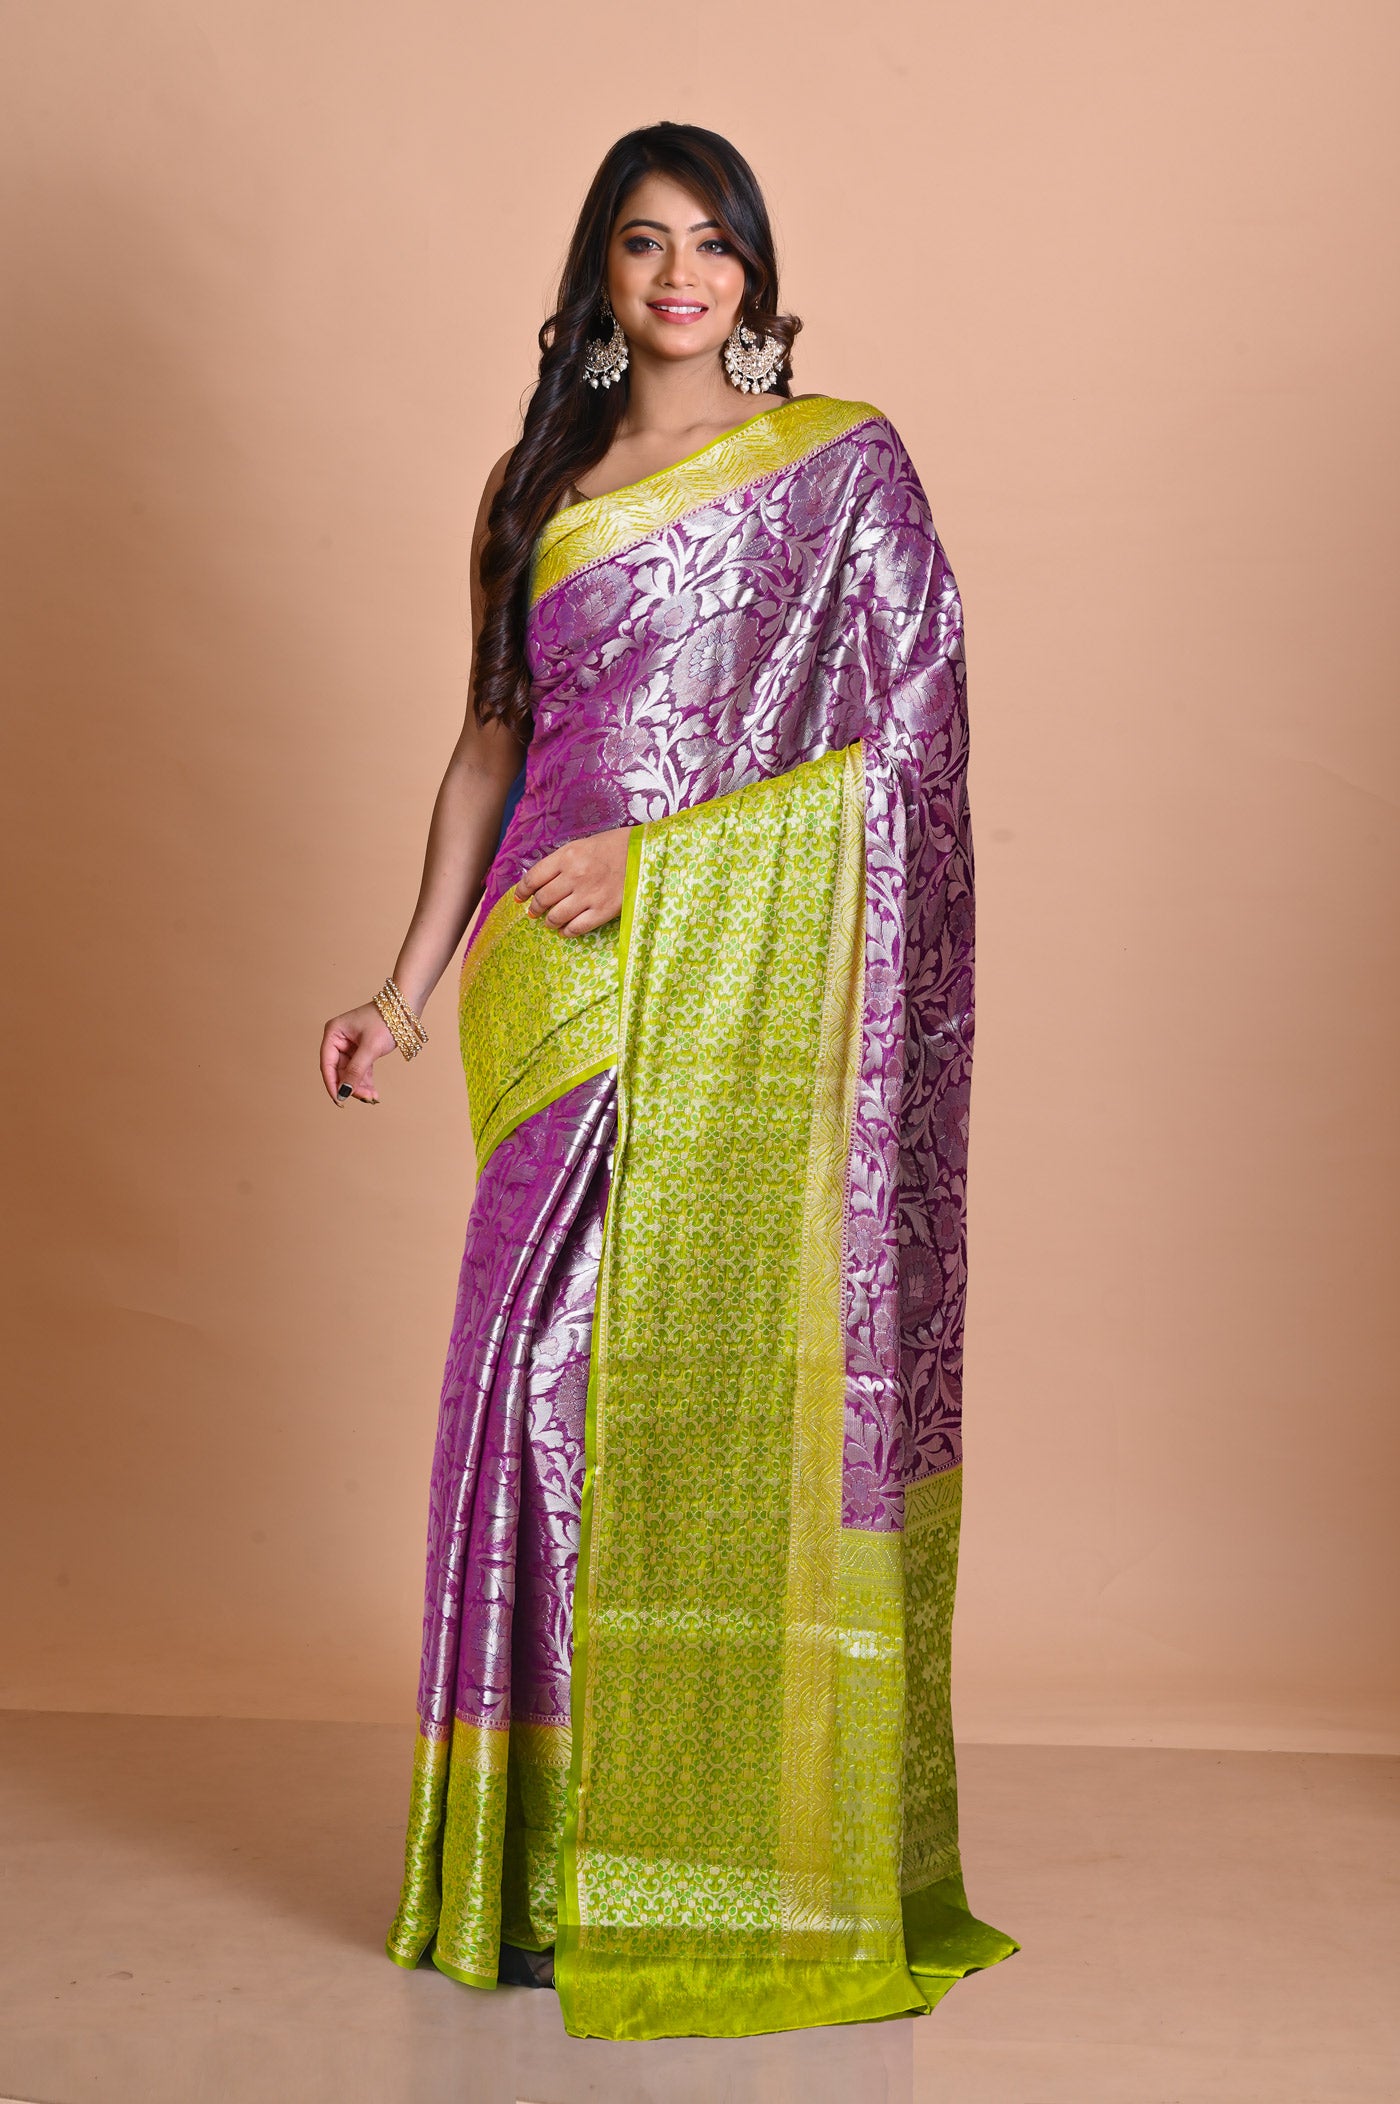 Banarasi silk sarees/with digital printed sari /bodar printed sarees/market  | Saree designs, Fancy sarees, Designer sarees online